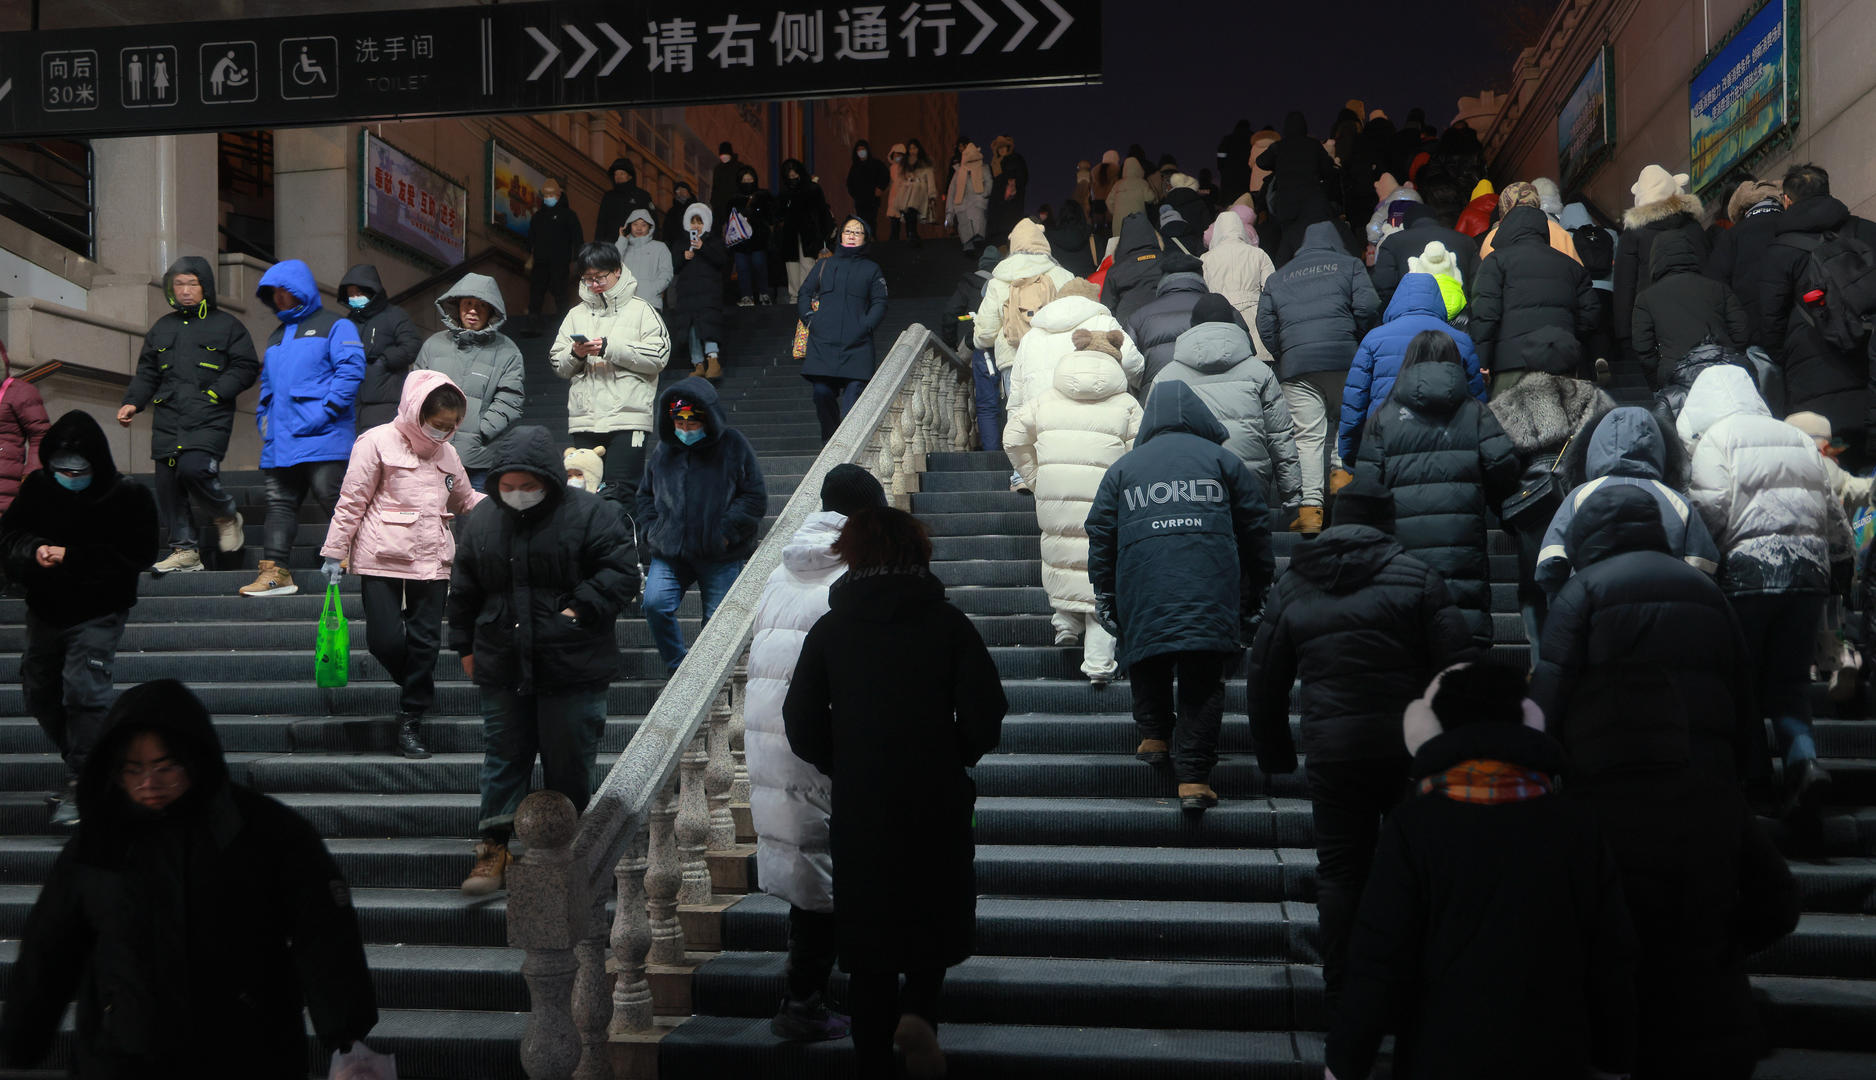 ▲为照顾好不熟悉冰雪路面的南方游客，哈尔滨中央大街的地下通道铺上了地毯。图据视觉中国